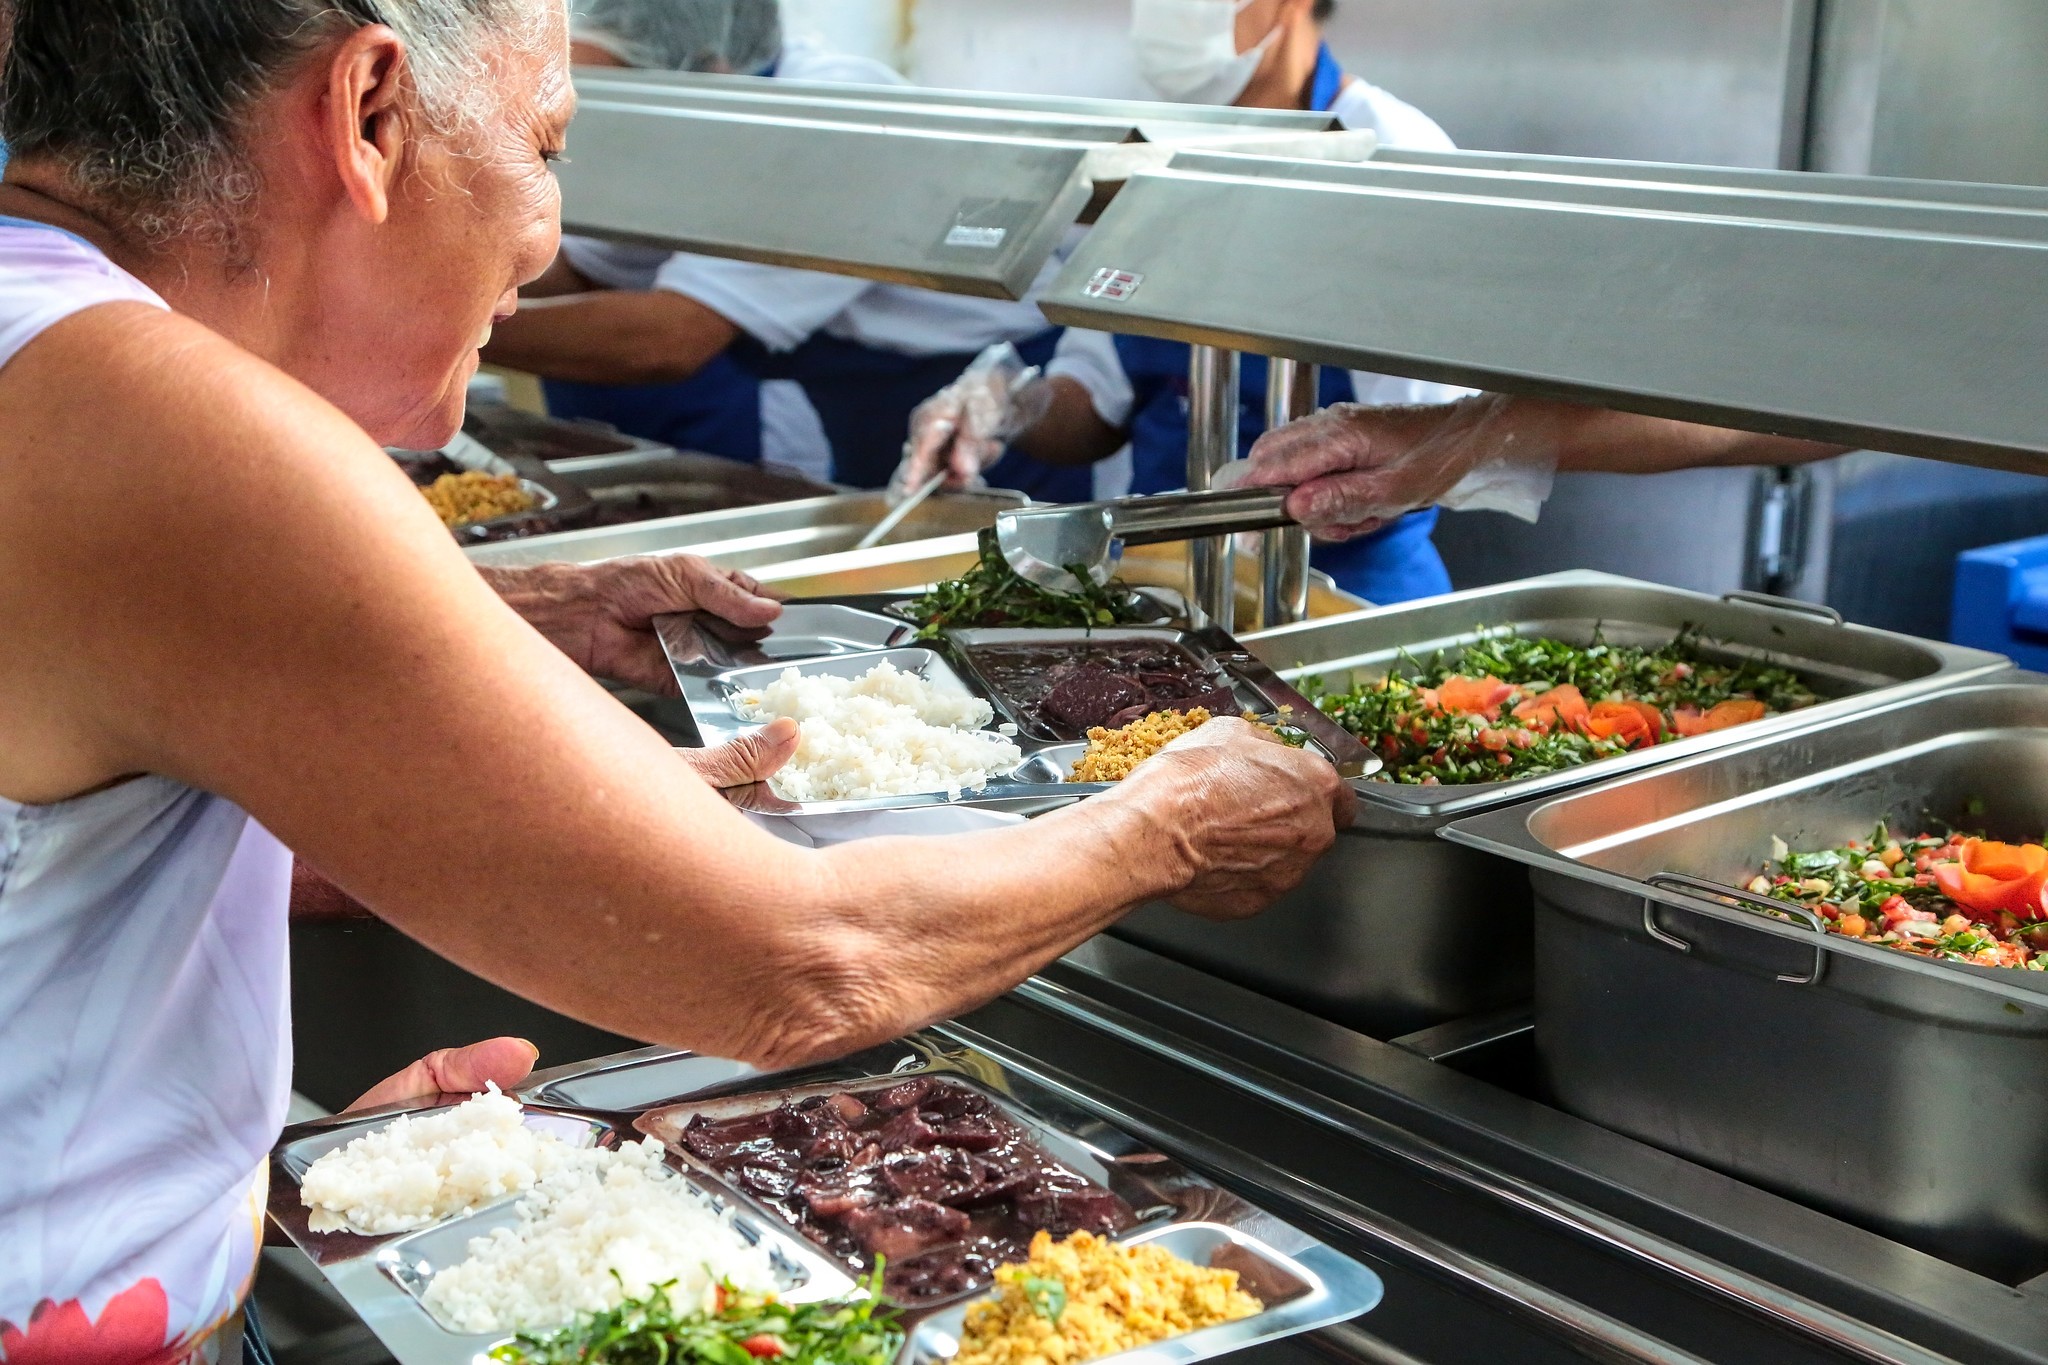 Almoço no Restaurante Popular de Uberaba custa R$ 5, mais caro que em Belo Horizonte